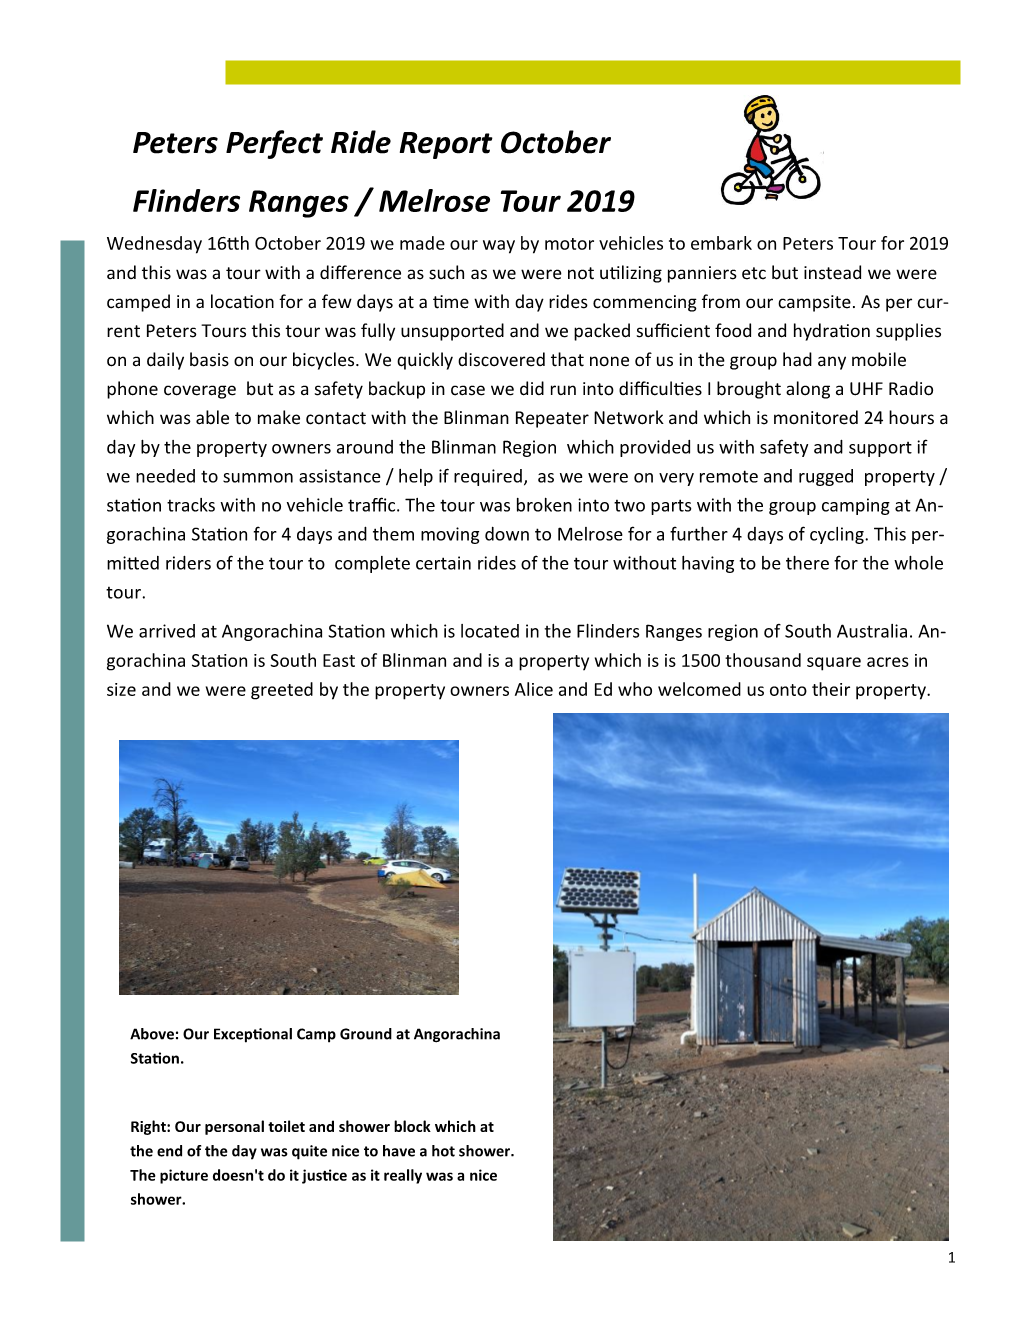 Peters Flinders Ranges Tour October 2019 Take 2